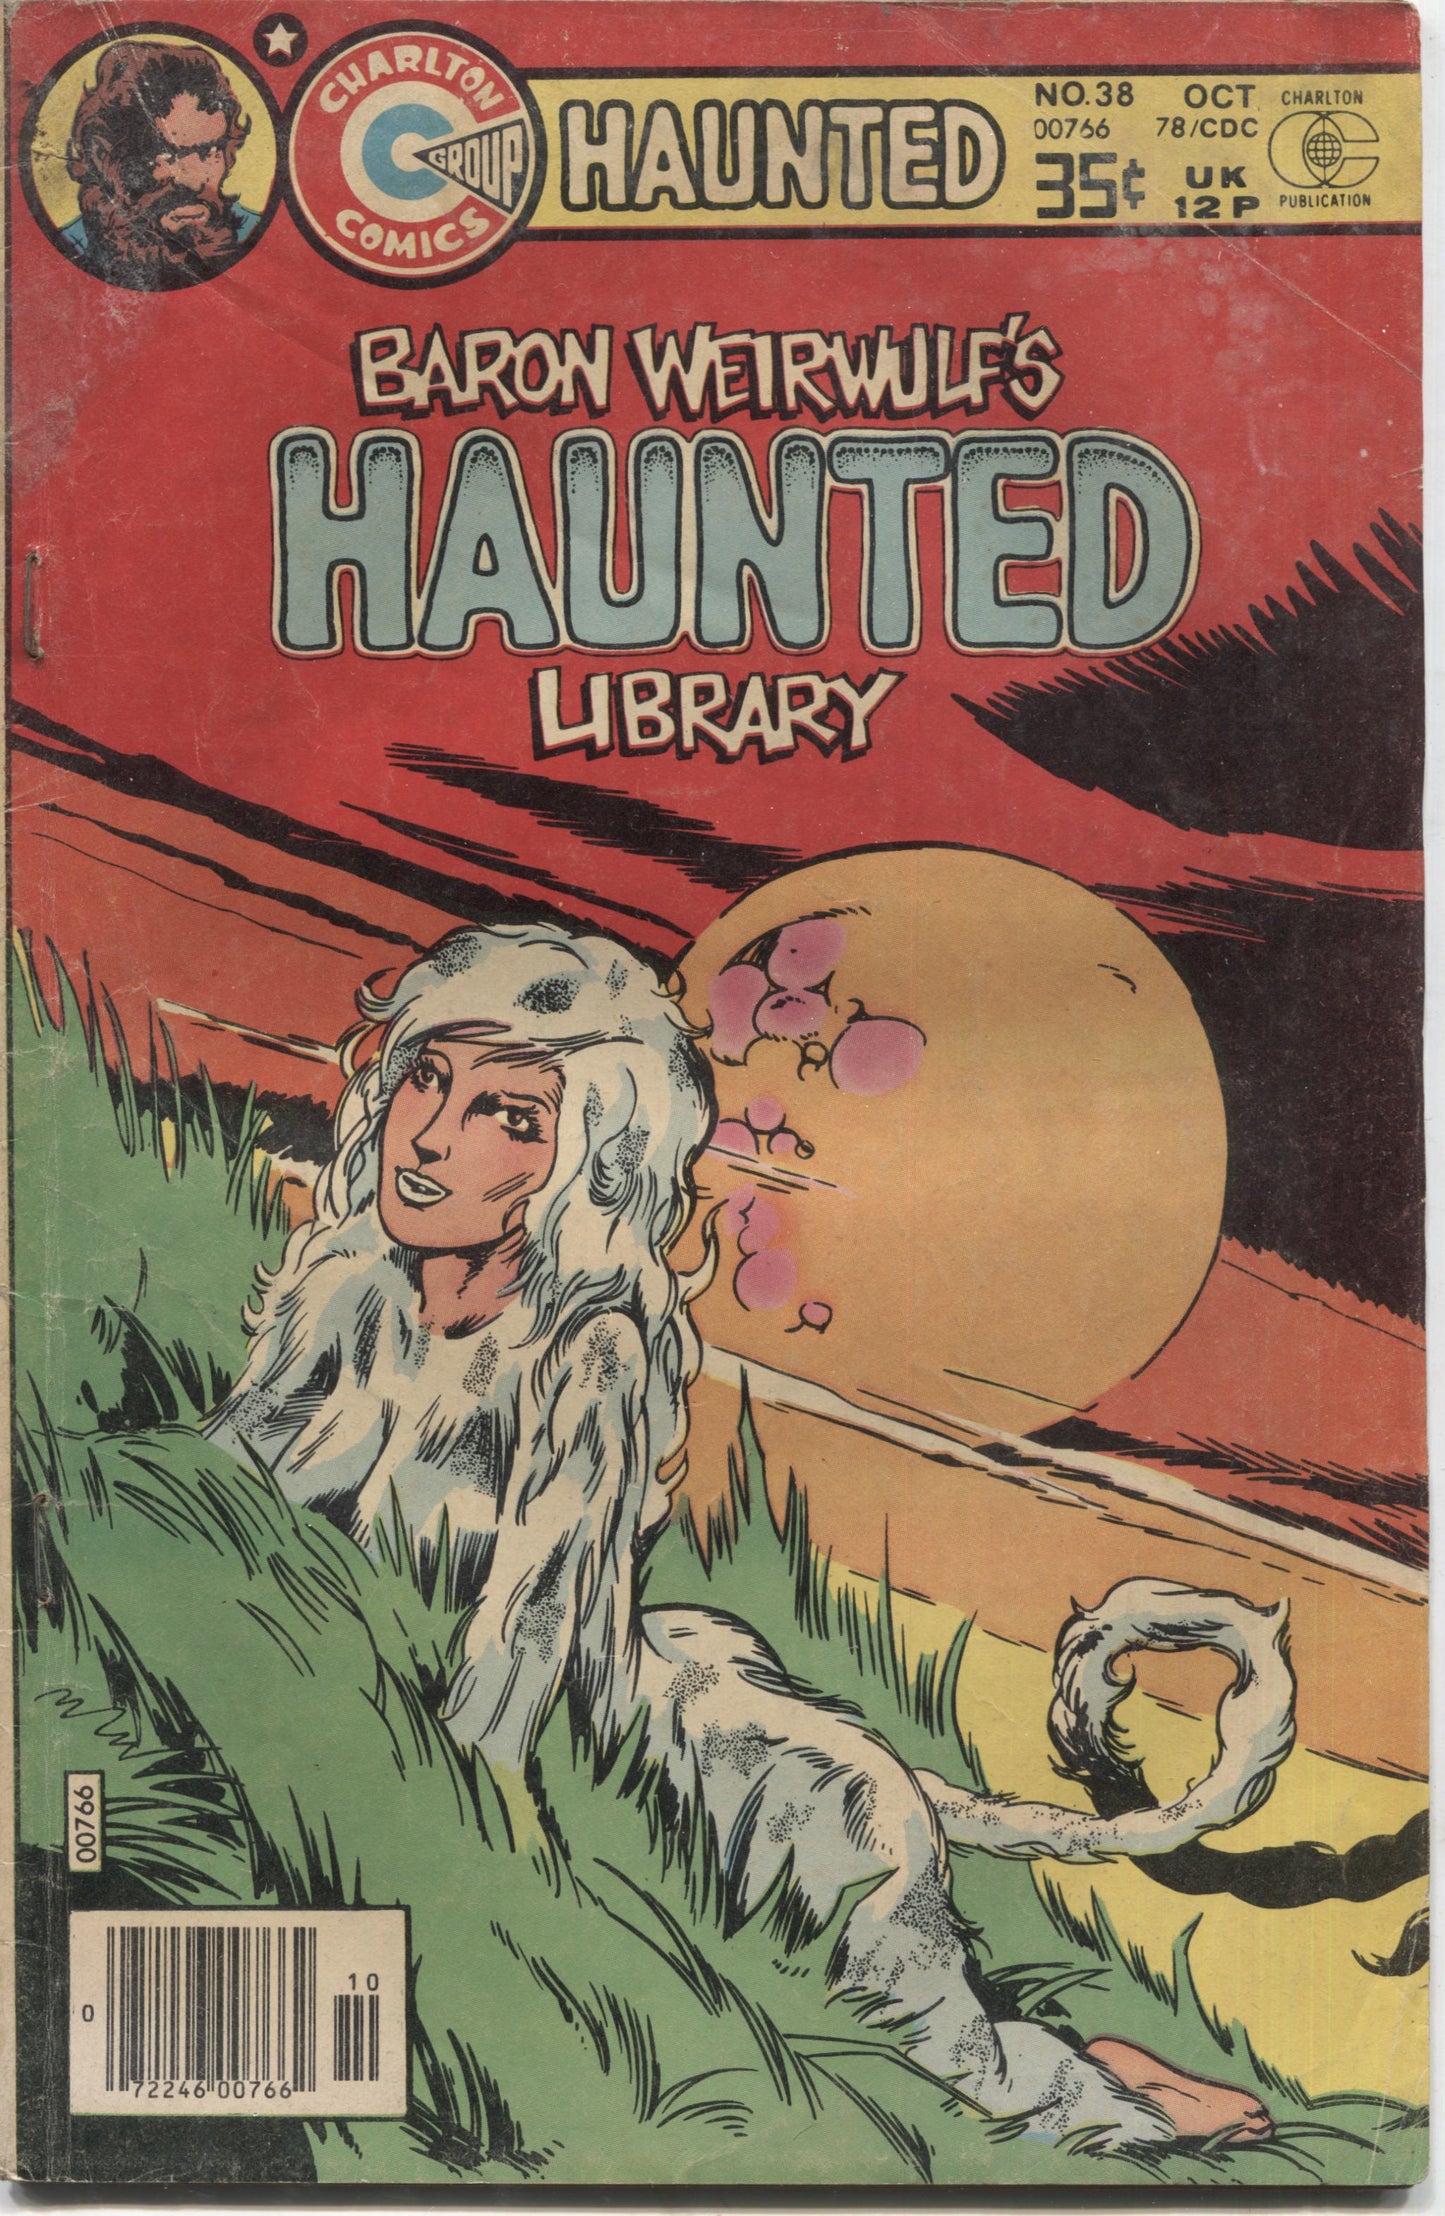 Haunted No. 38, "Sad-Eyed Sara," Charlton Comics, October 1978